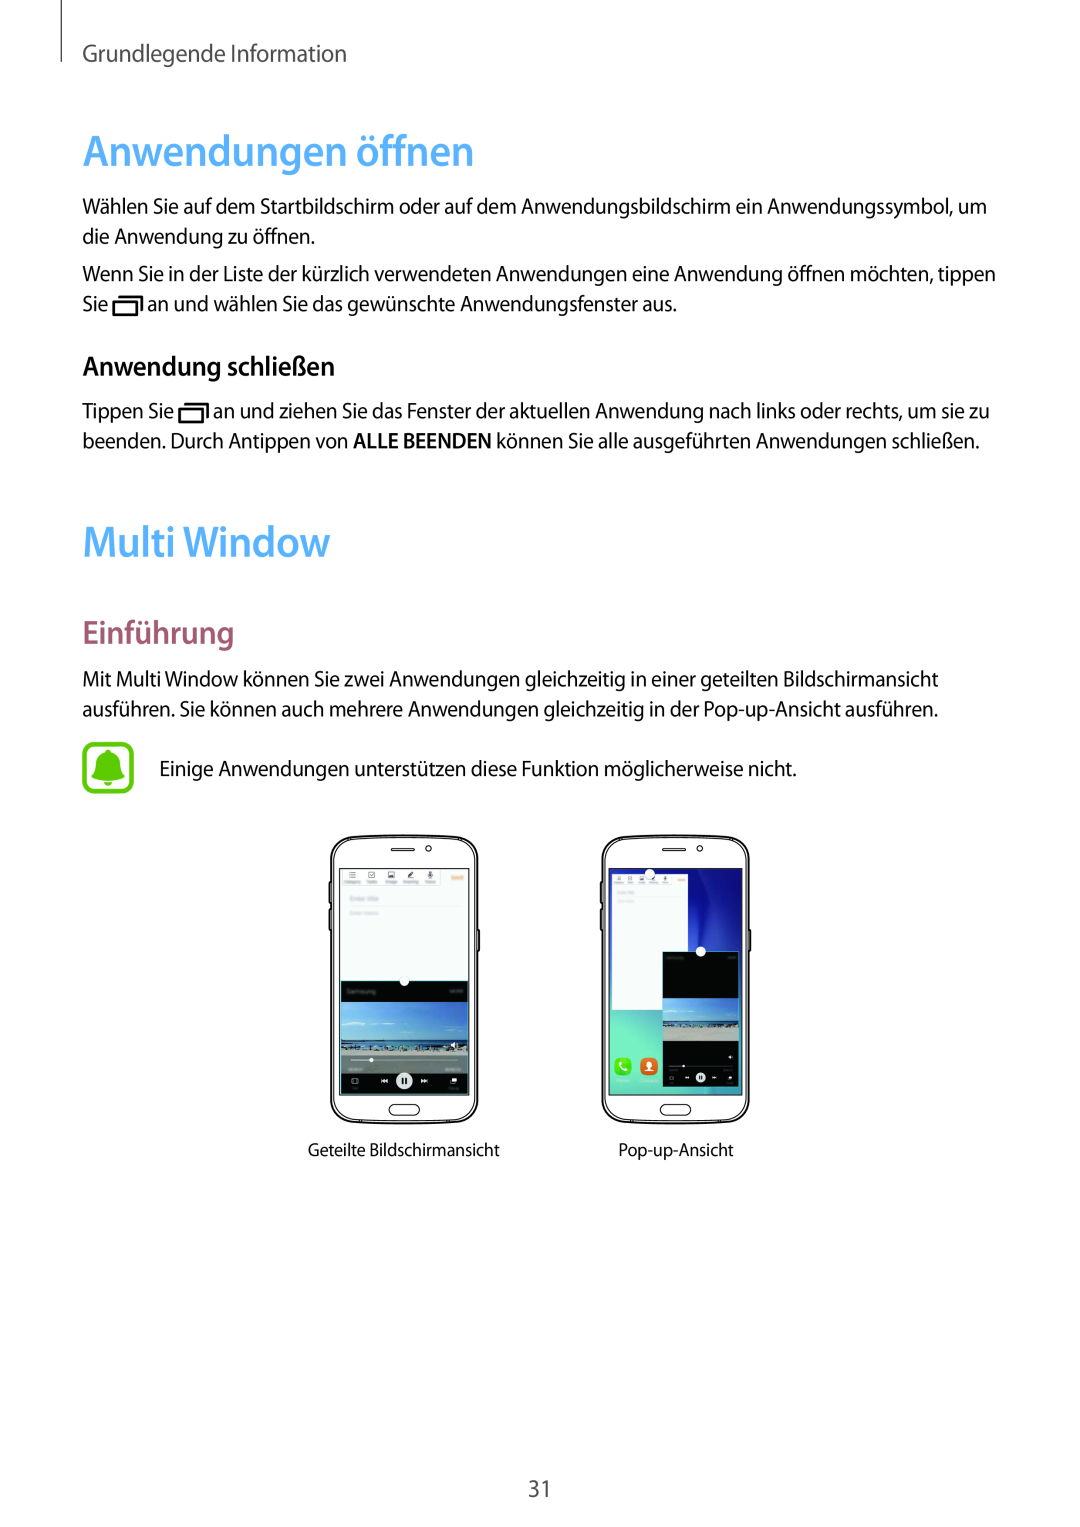 Samsung SM-G920FZDFDBT manual Anwendungen öffnen, Multi Window, Einführung, Anwendung schließen, Grundlegende Information 